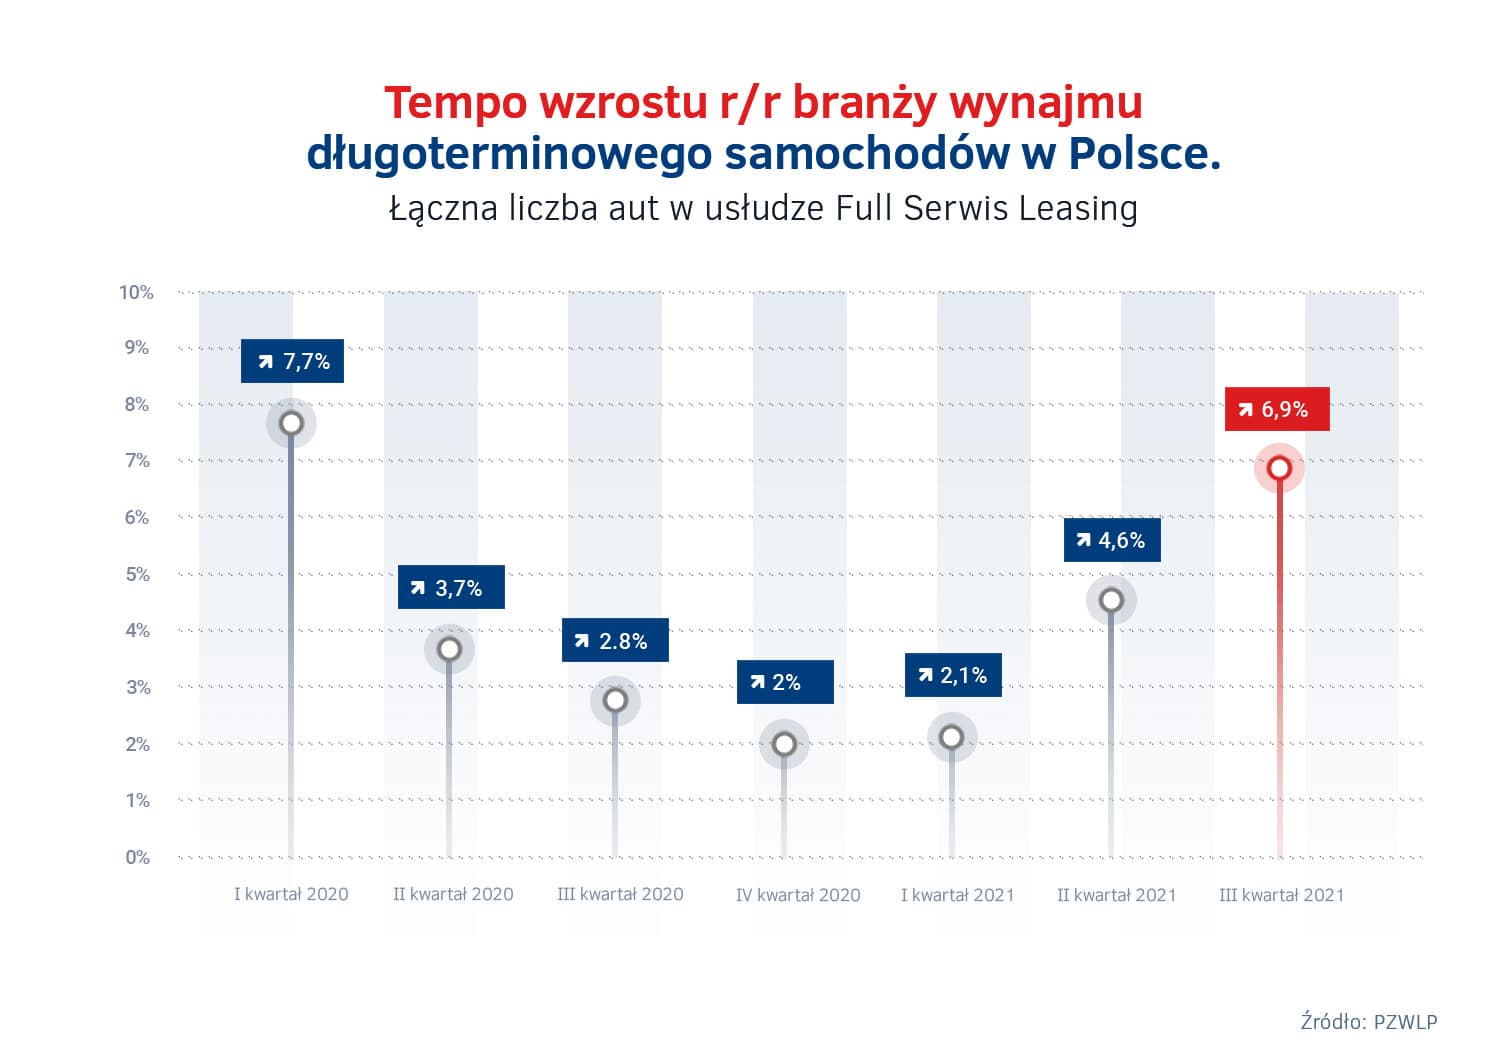 Tempo wzrostu wynajmu długoterminowego w Polsce 2020 – 2021